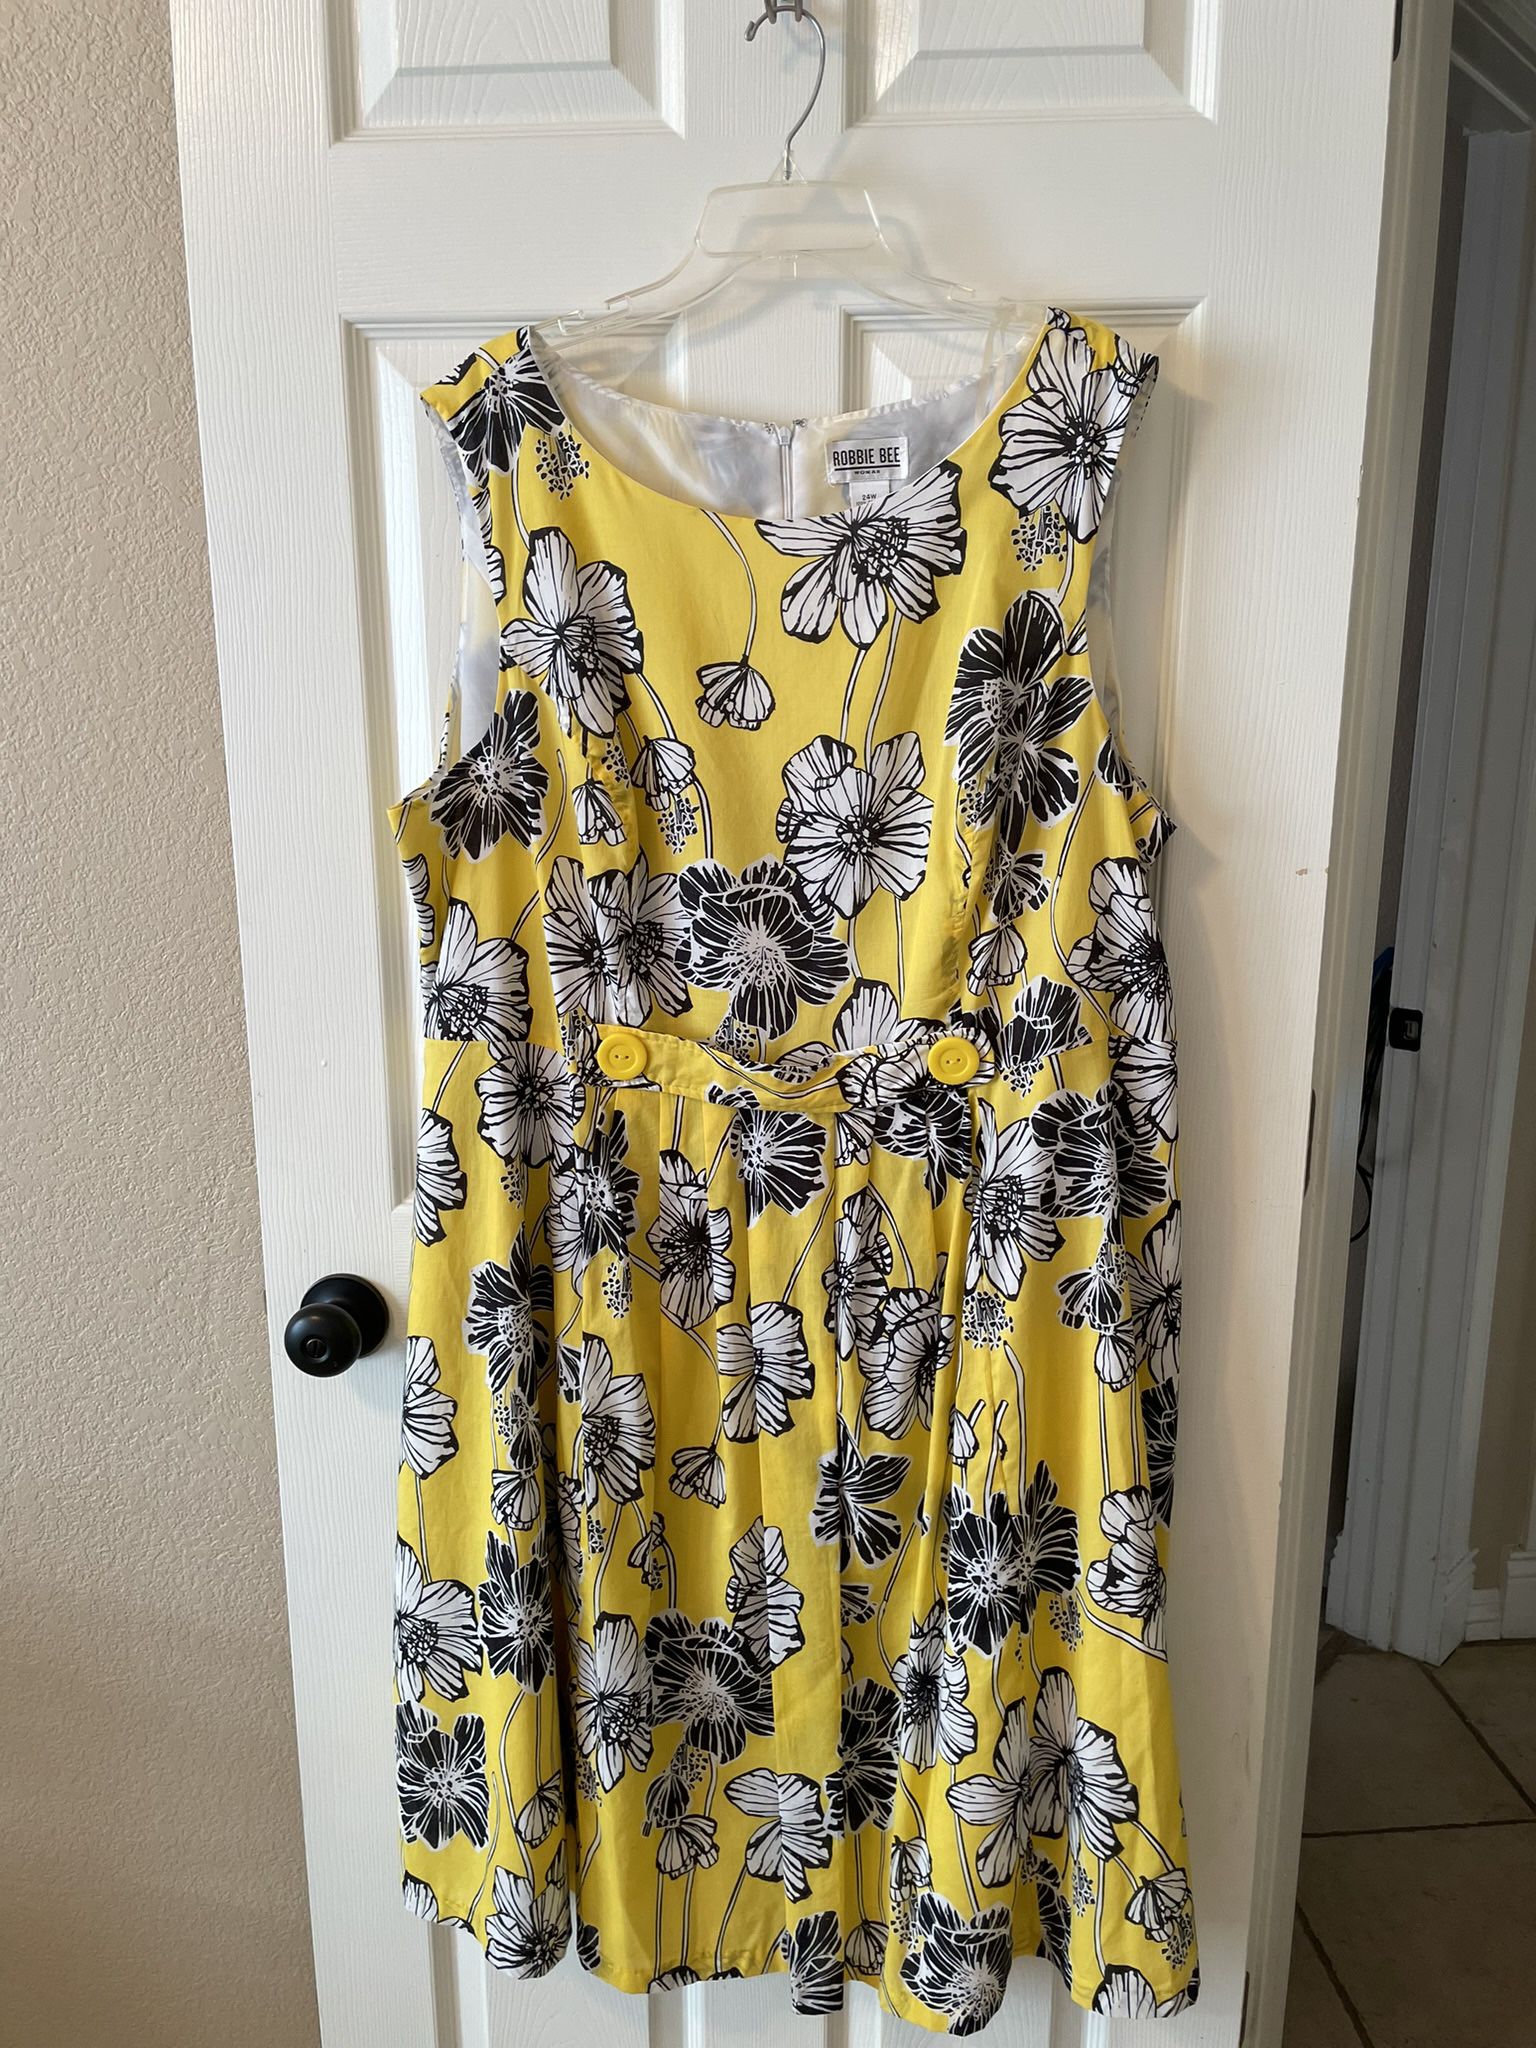 Sleeveless Yellow/Black Dress - Size 24